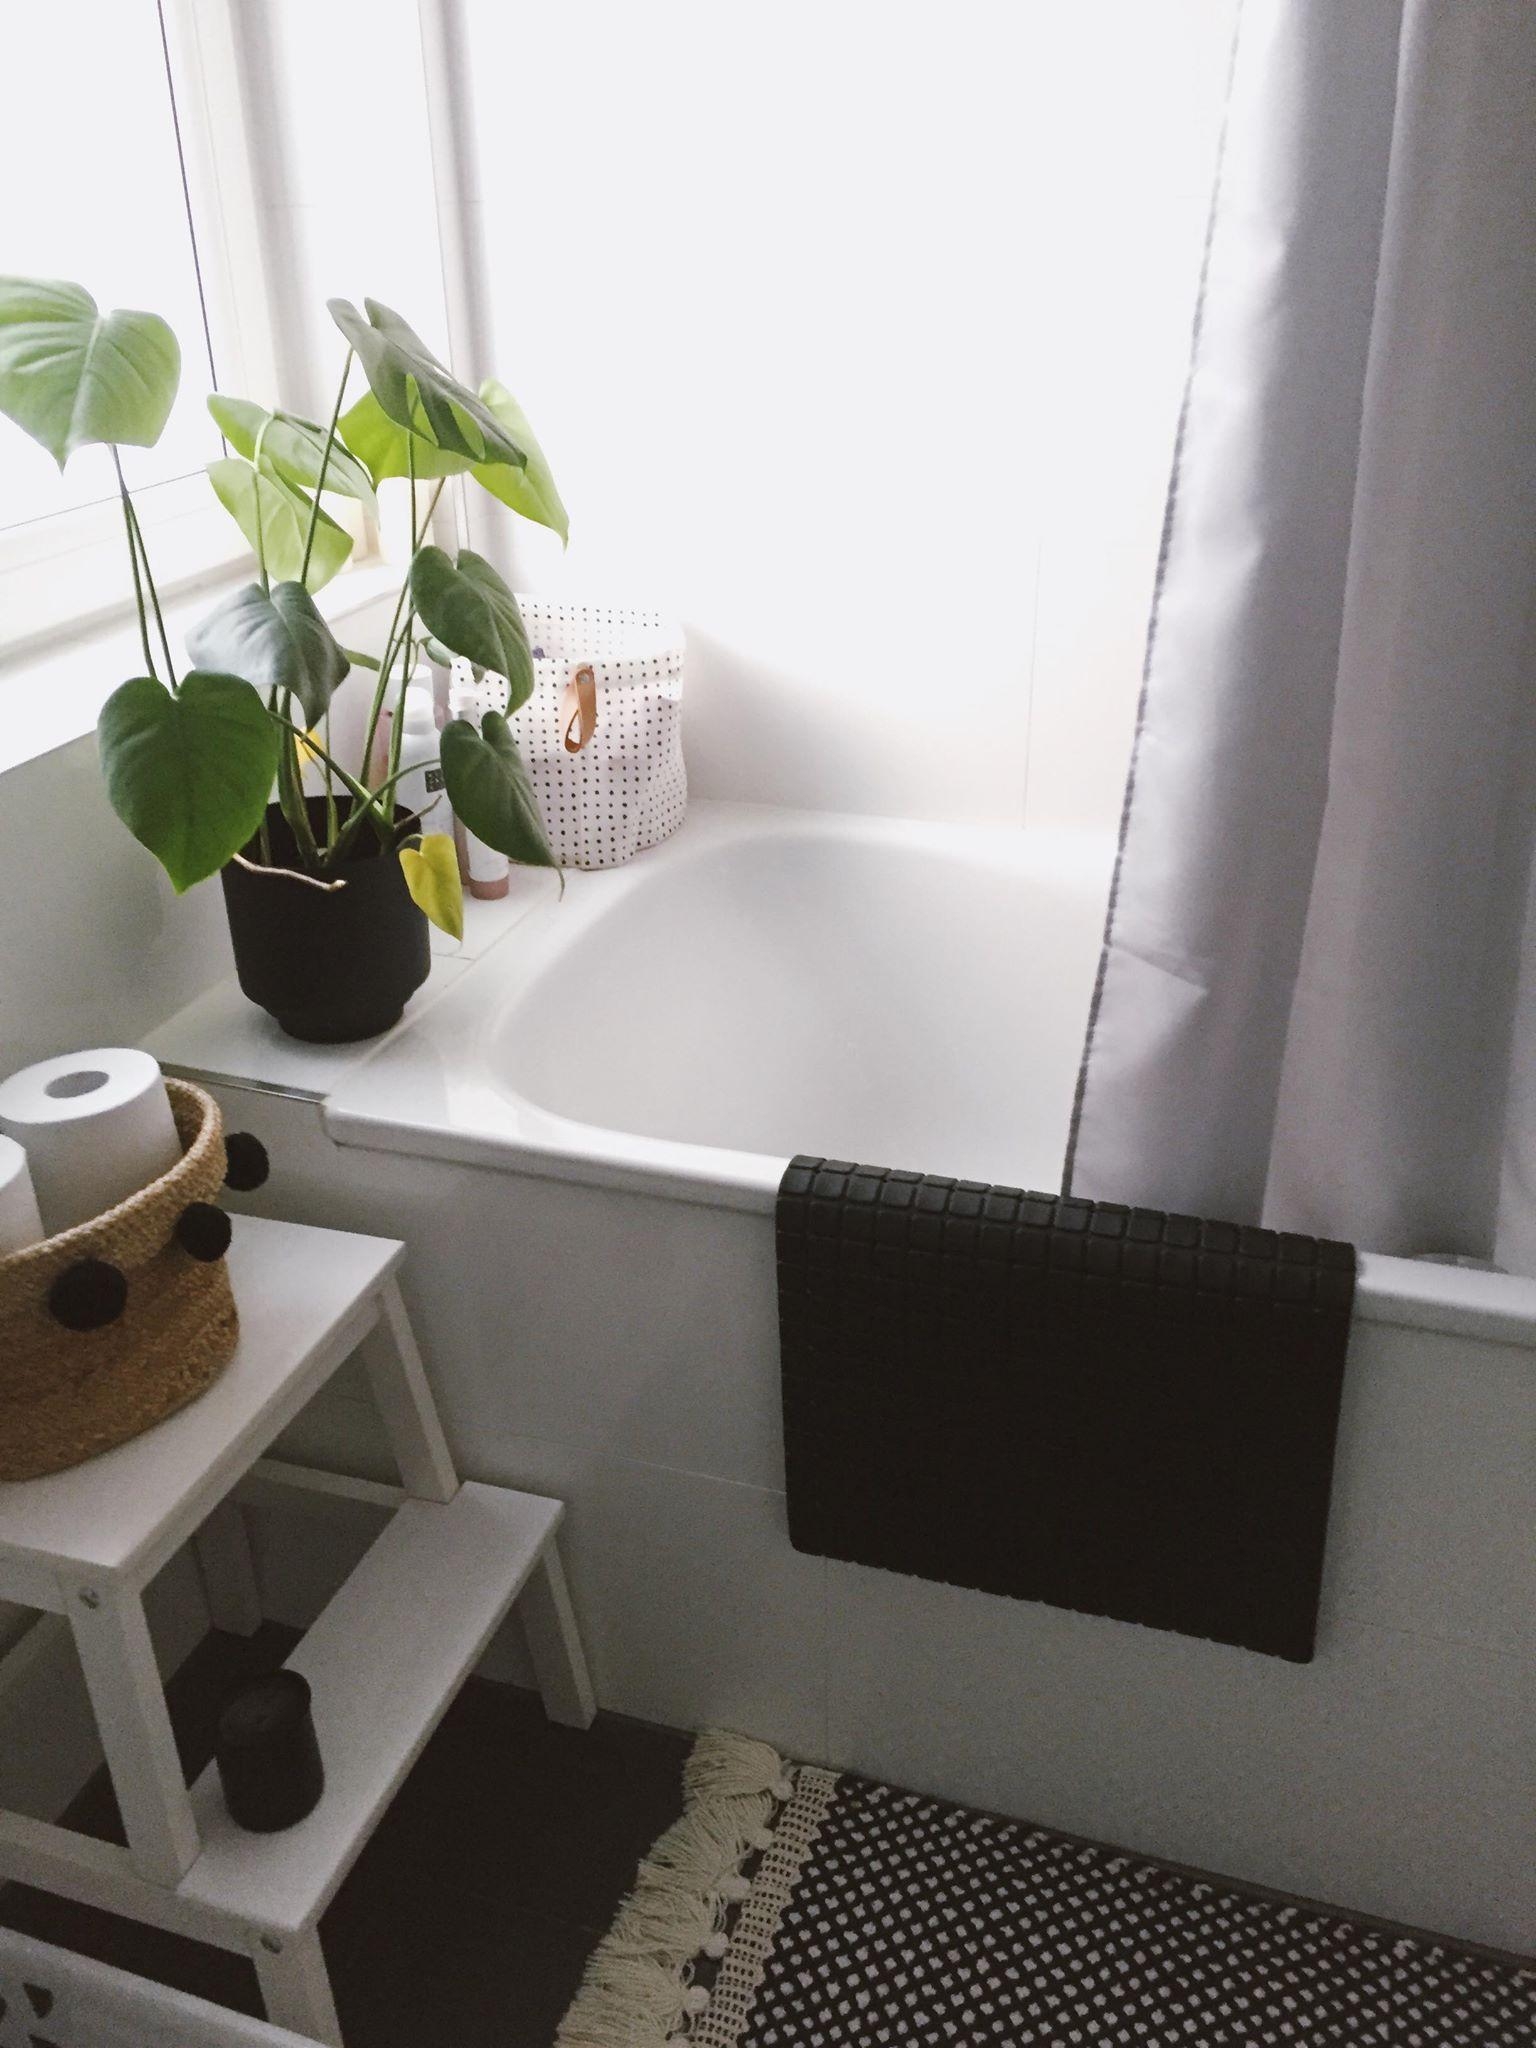 Badezimmer. Pflanzen dürfen nicht fehlen, sie sind super pflegeleicht im Bad. #badezimmer #pflanze #deko #plantlover